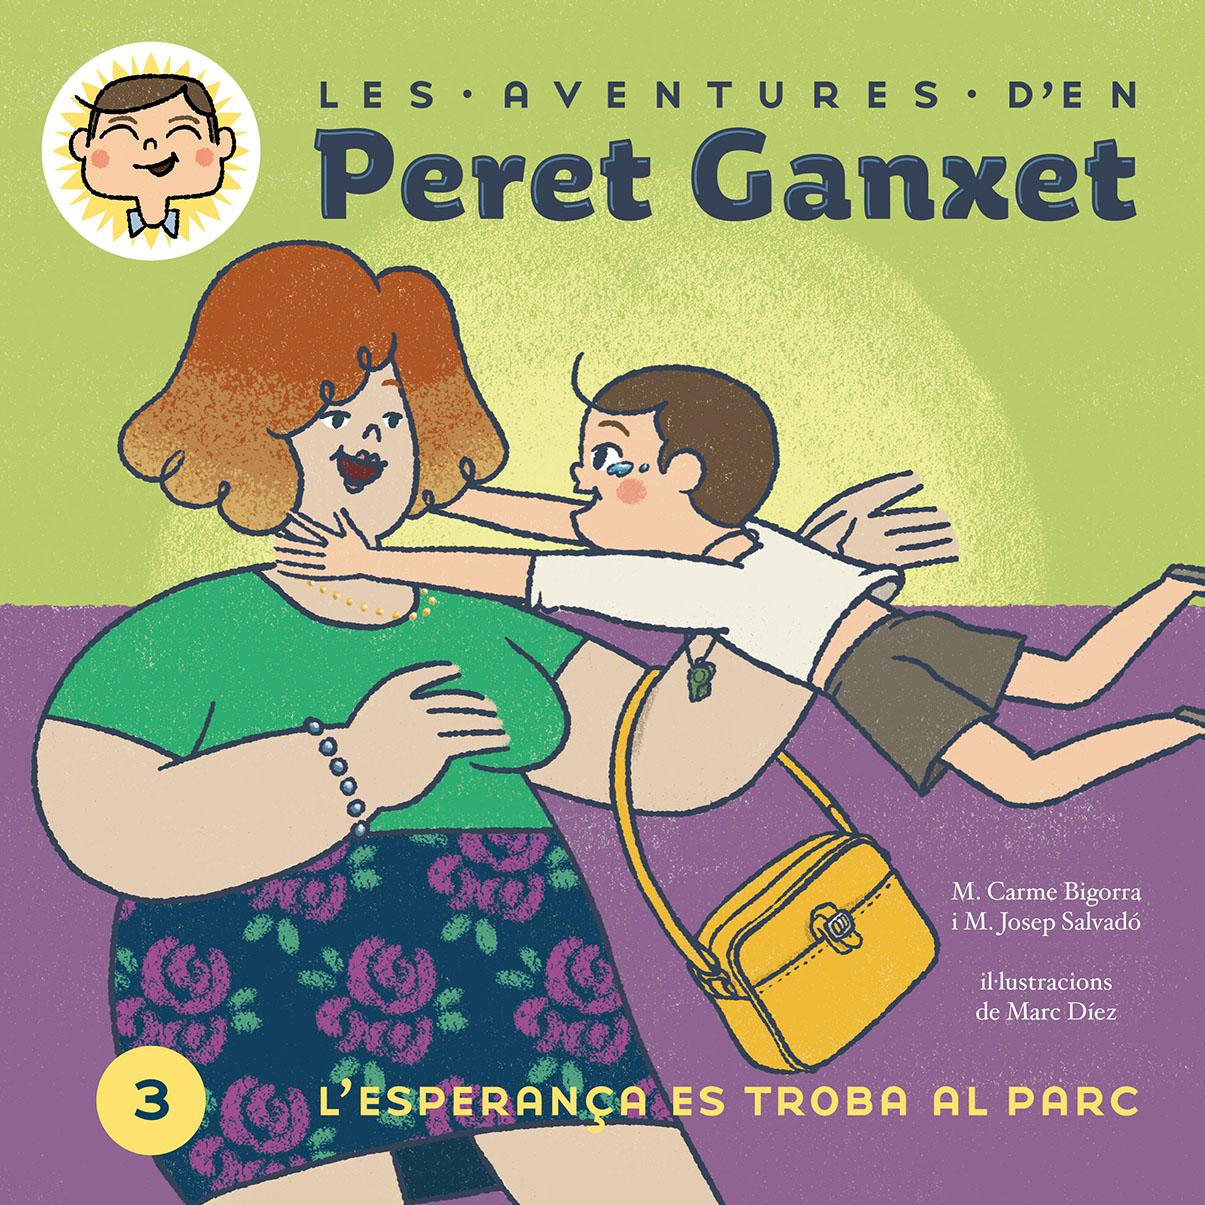 Presentació del 3r volum de les aventures d'en Peret Ganxet